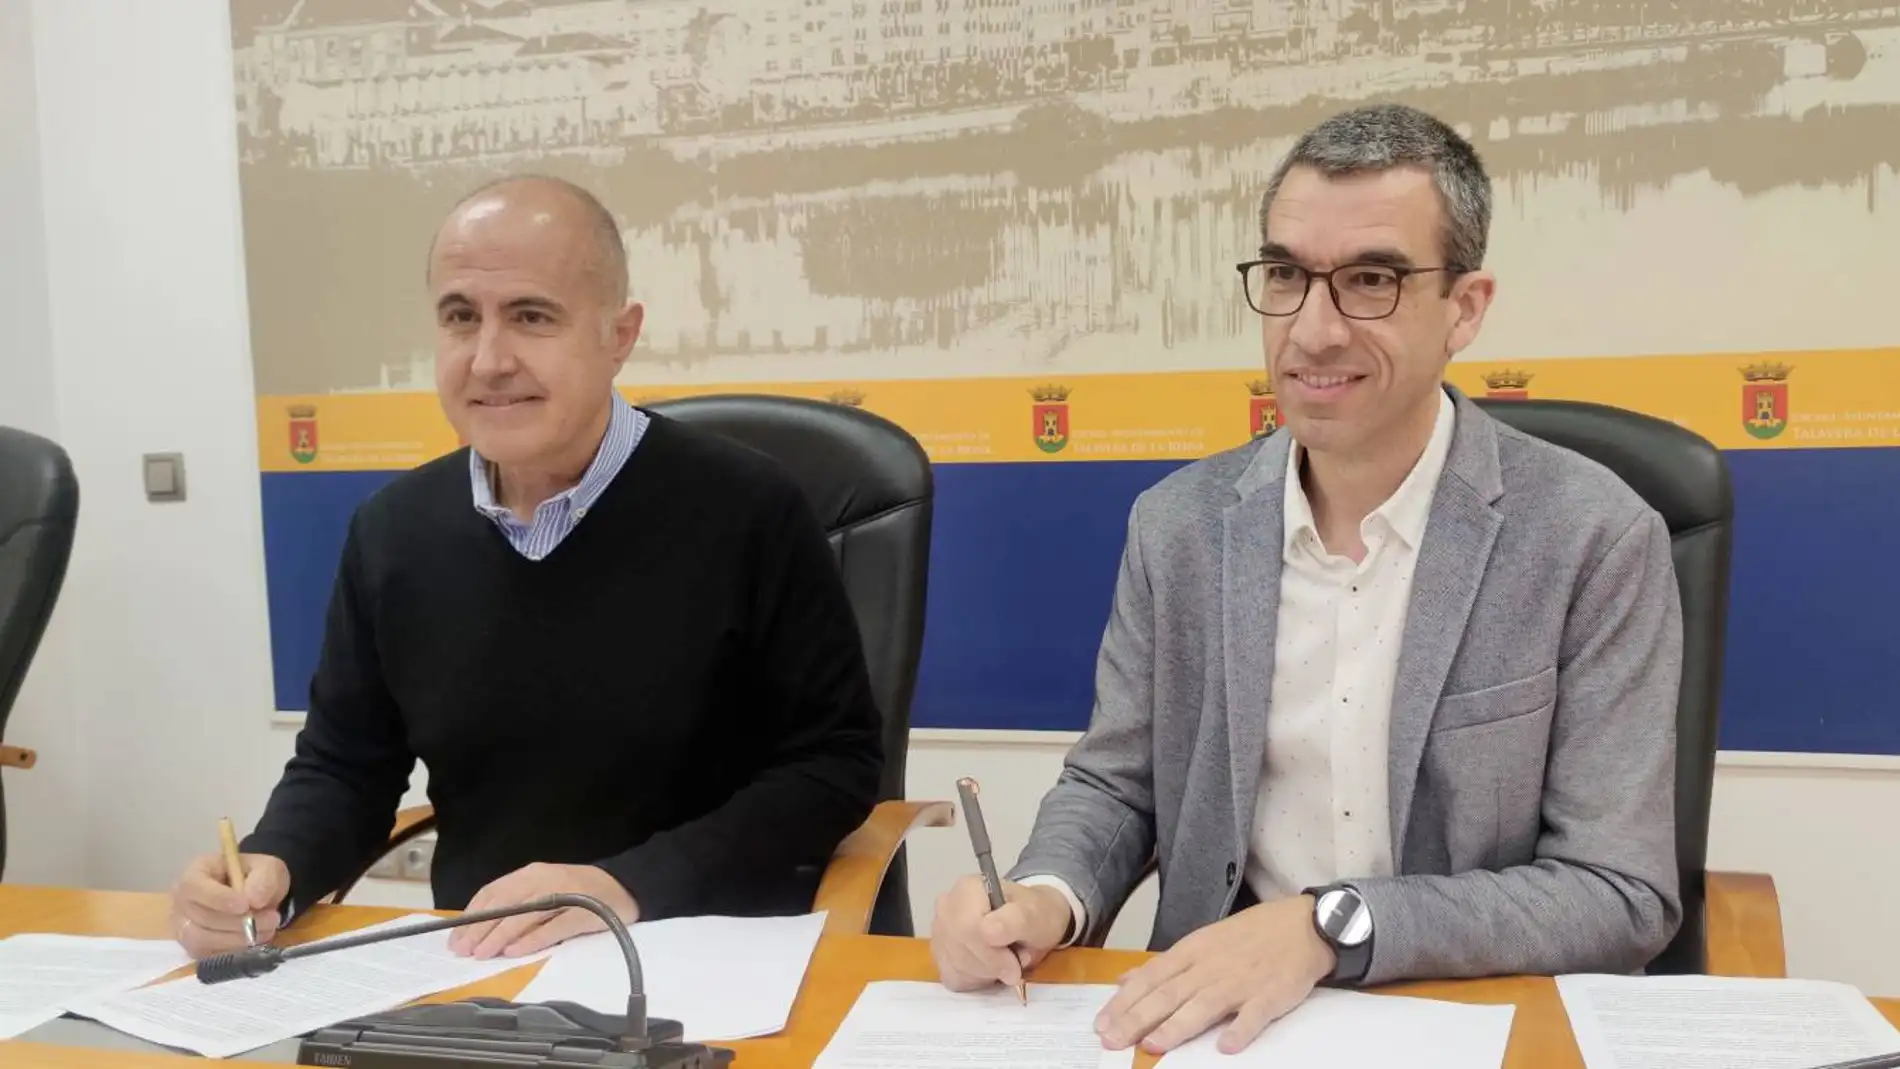 Acuerdo entre PP y PSOE por el Tajo